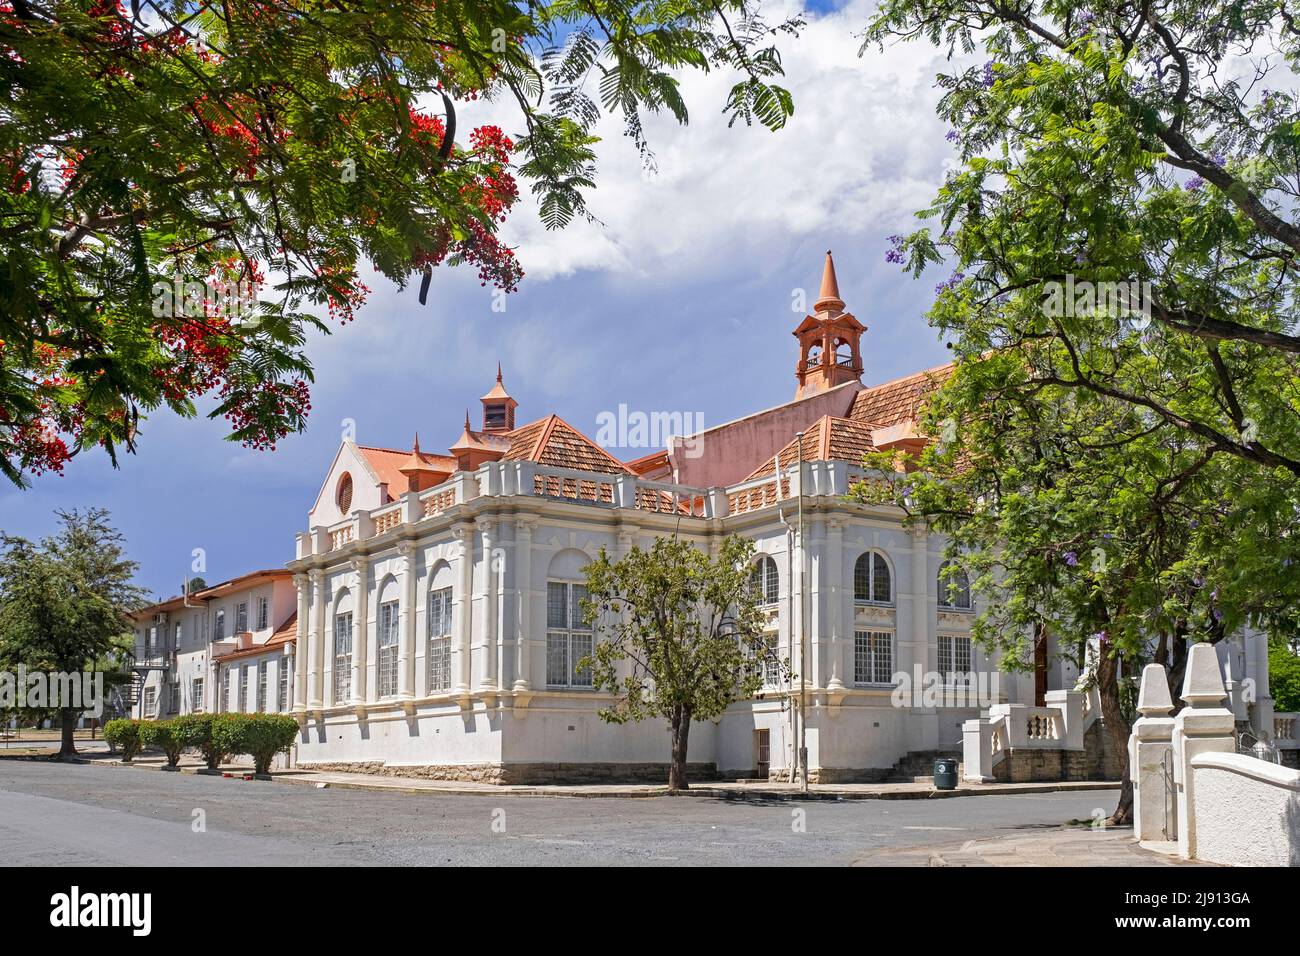 Victoriasaal / Victoria Hall, ayuntamiento de estilo renacentista flamenco en la ciudad de Graaff-Reinet, Cabo Oriental, Sudáfrica Foto de stock